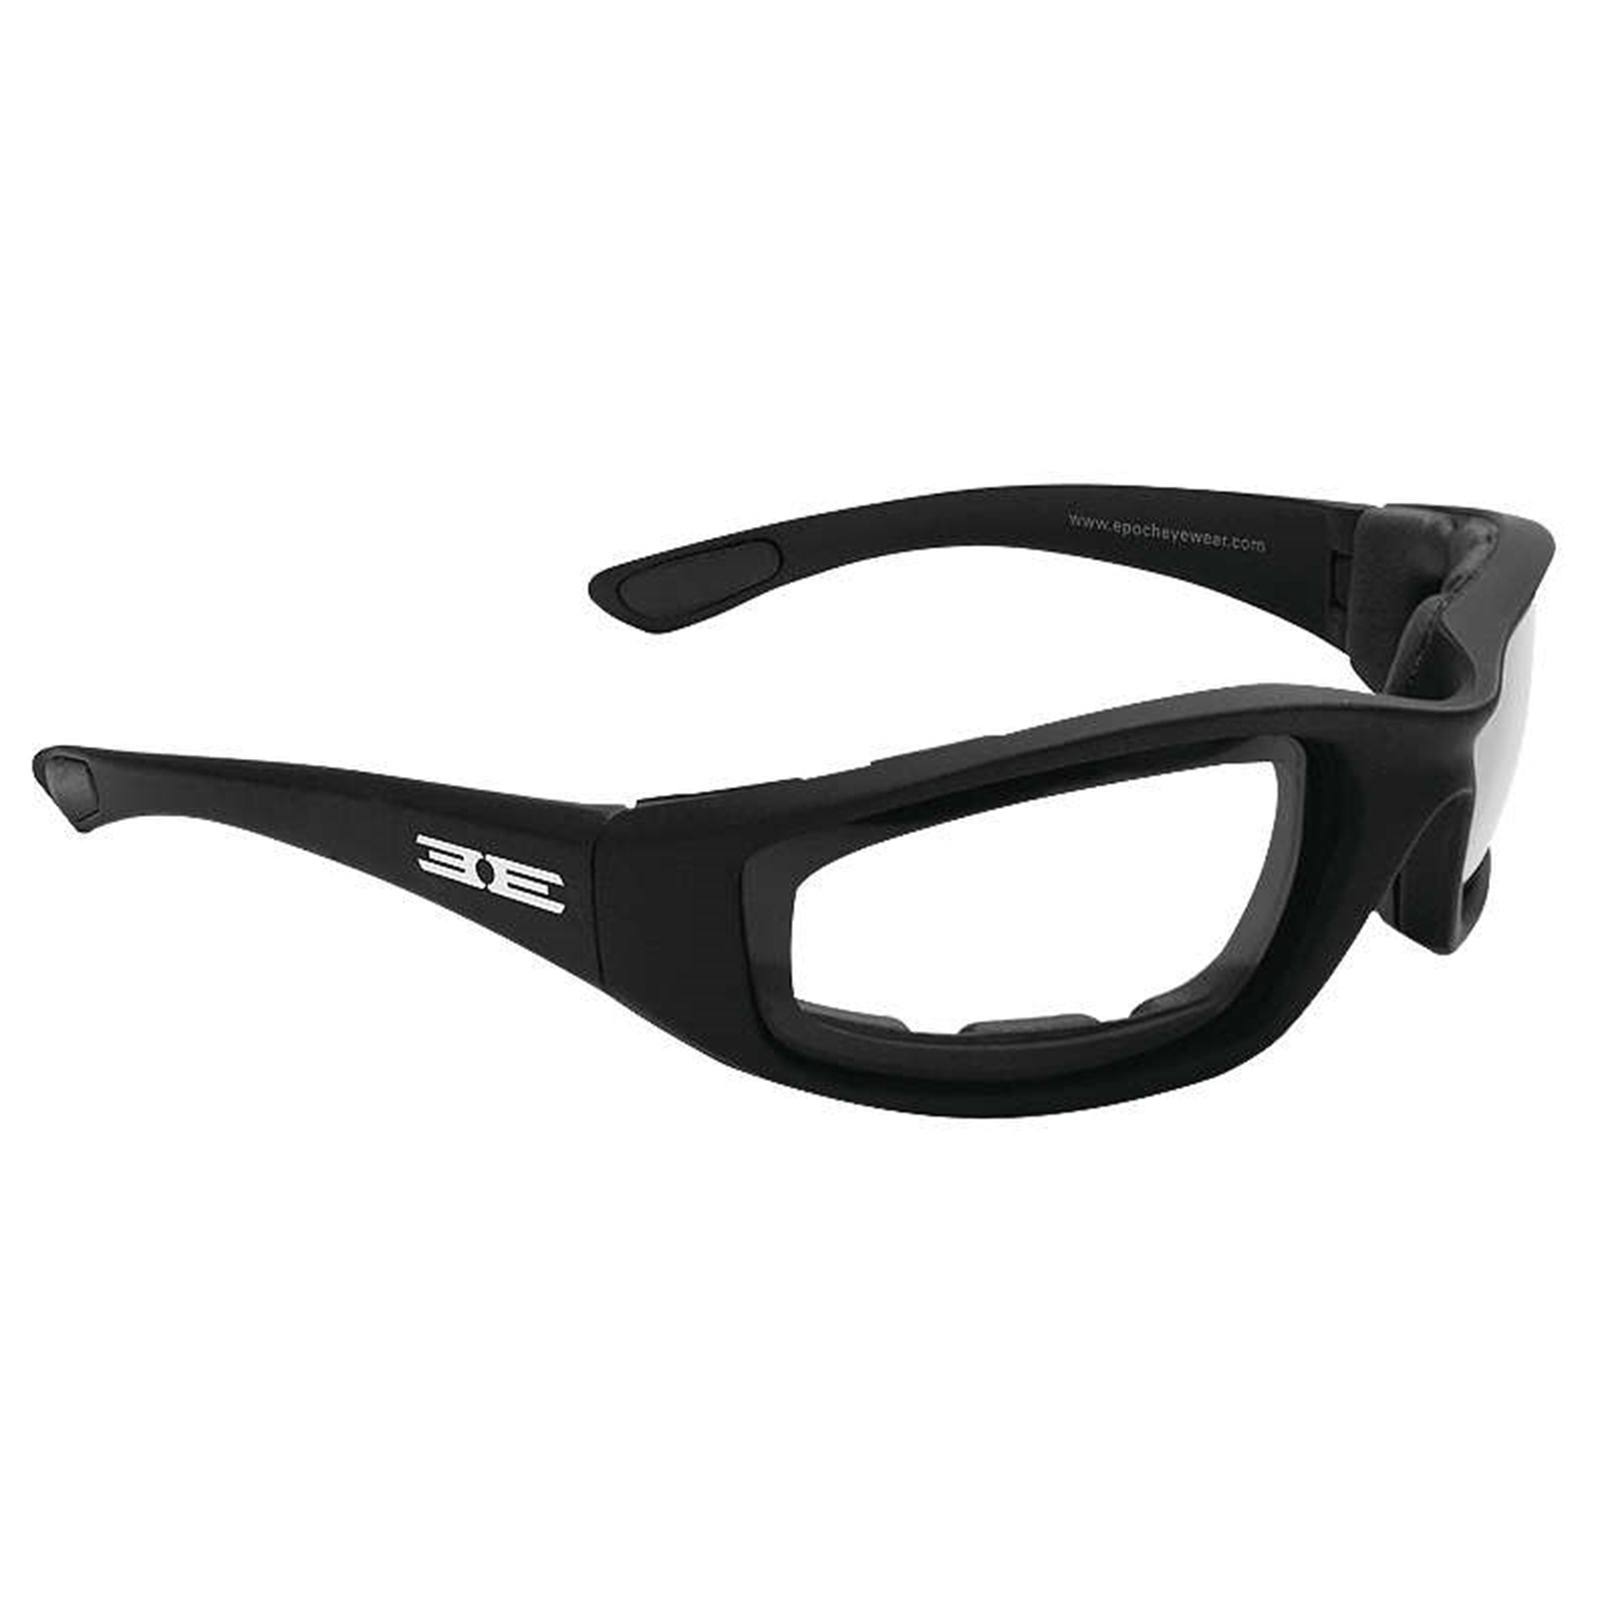 Epoch Eyewear Foam Sunglasses Black - Clear